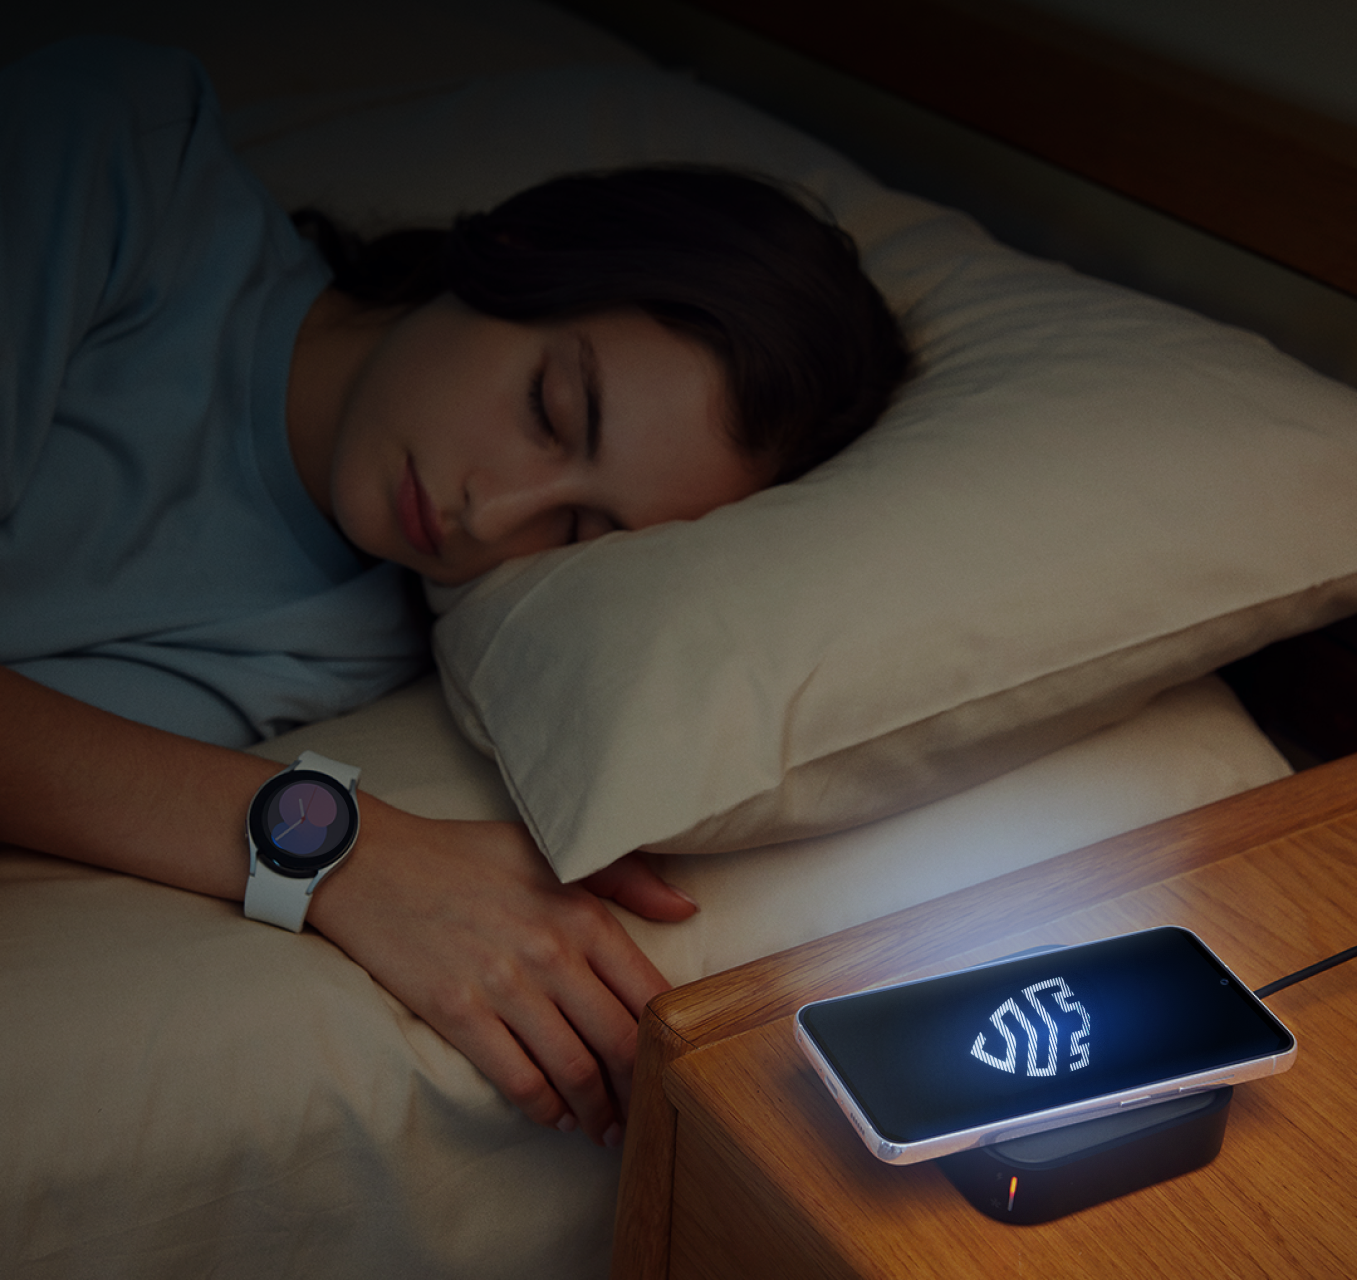 Persona che dorme in una stanza buia, accanto a un dispositivo mobile Samsung che mostra il logo Knox illuminato.